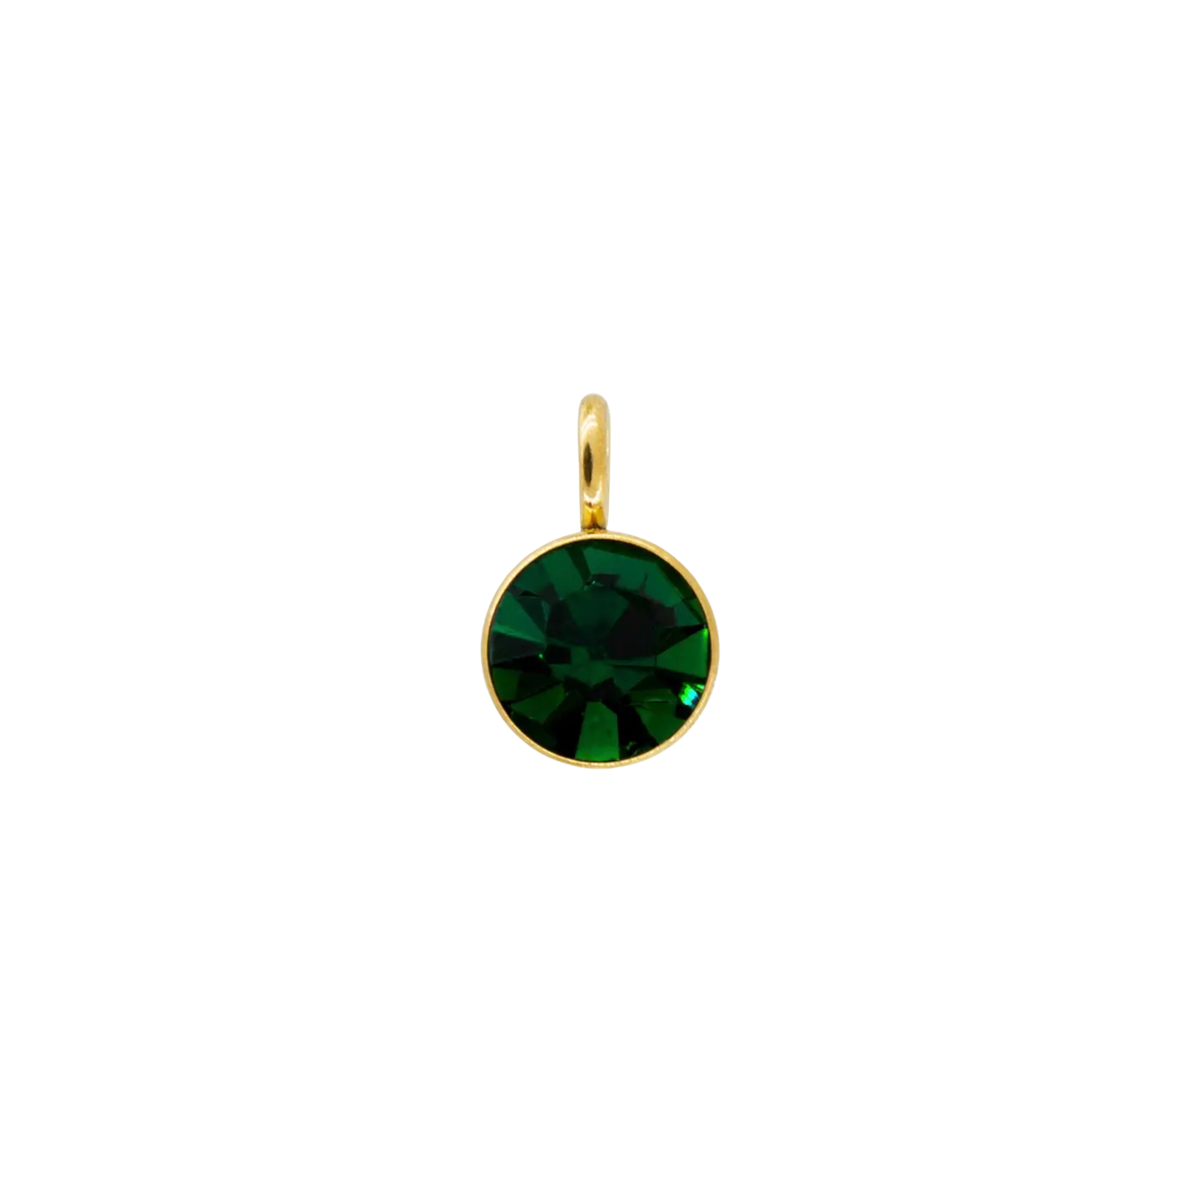 Birthstone - May (Emerald)